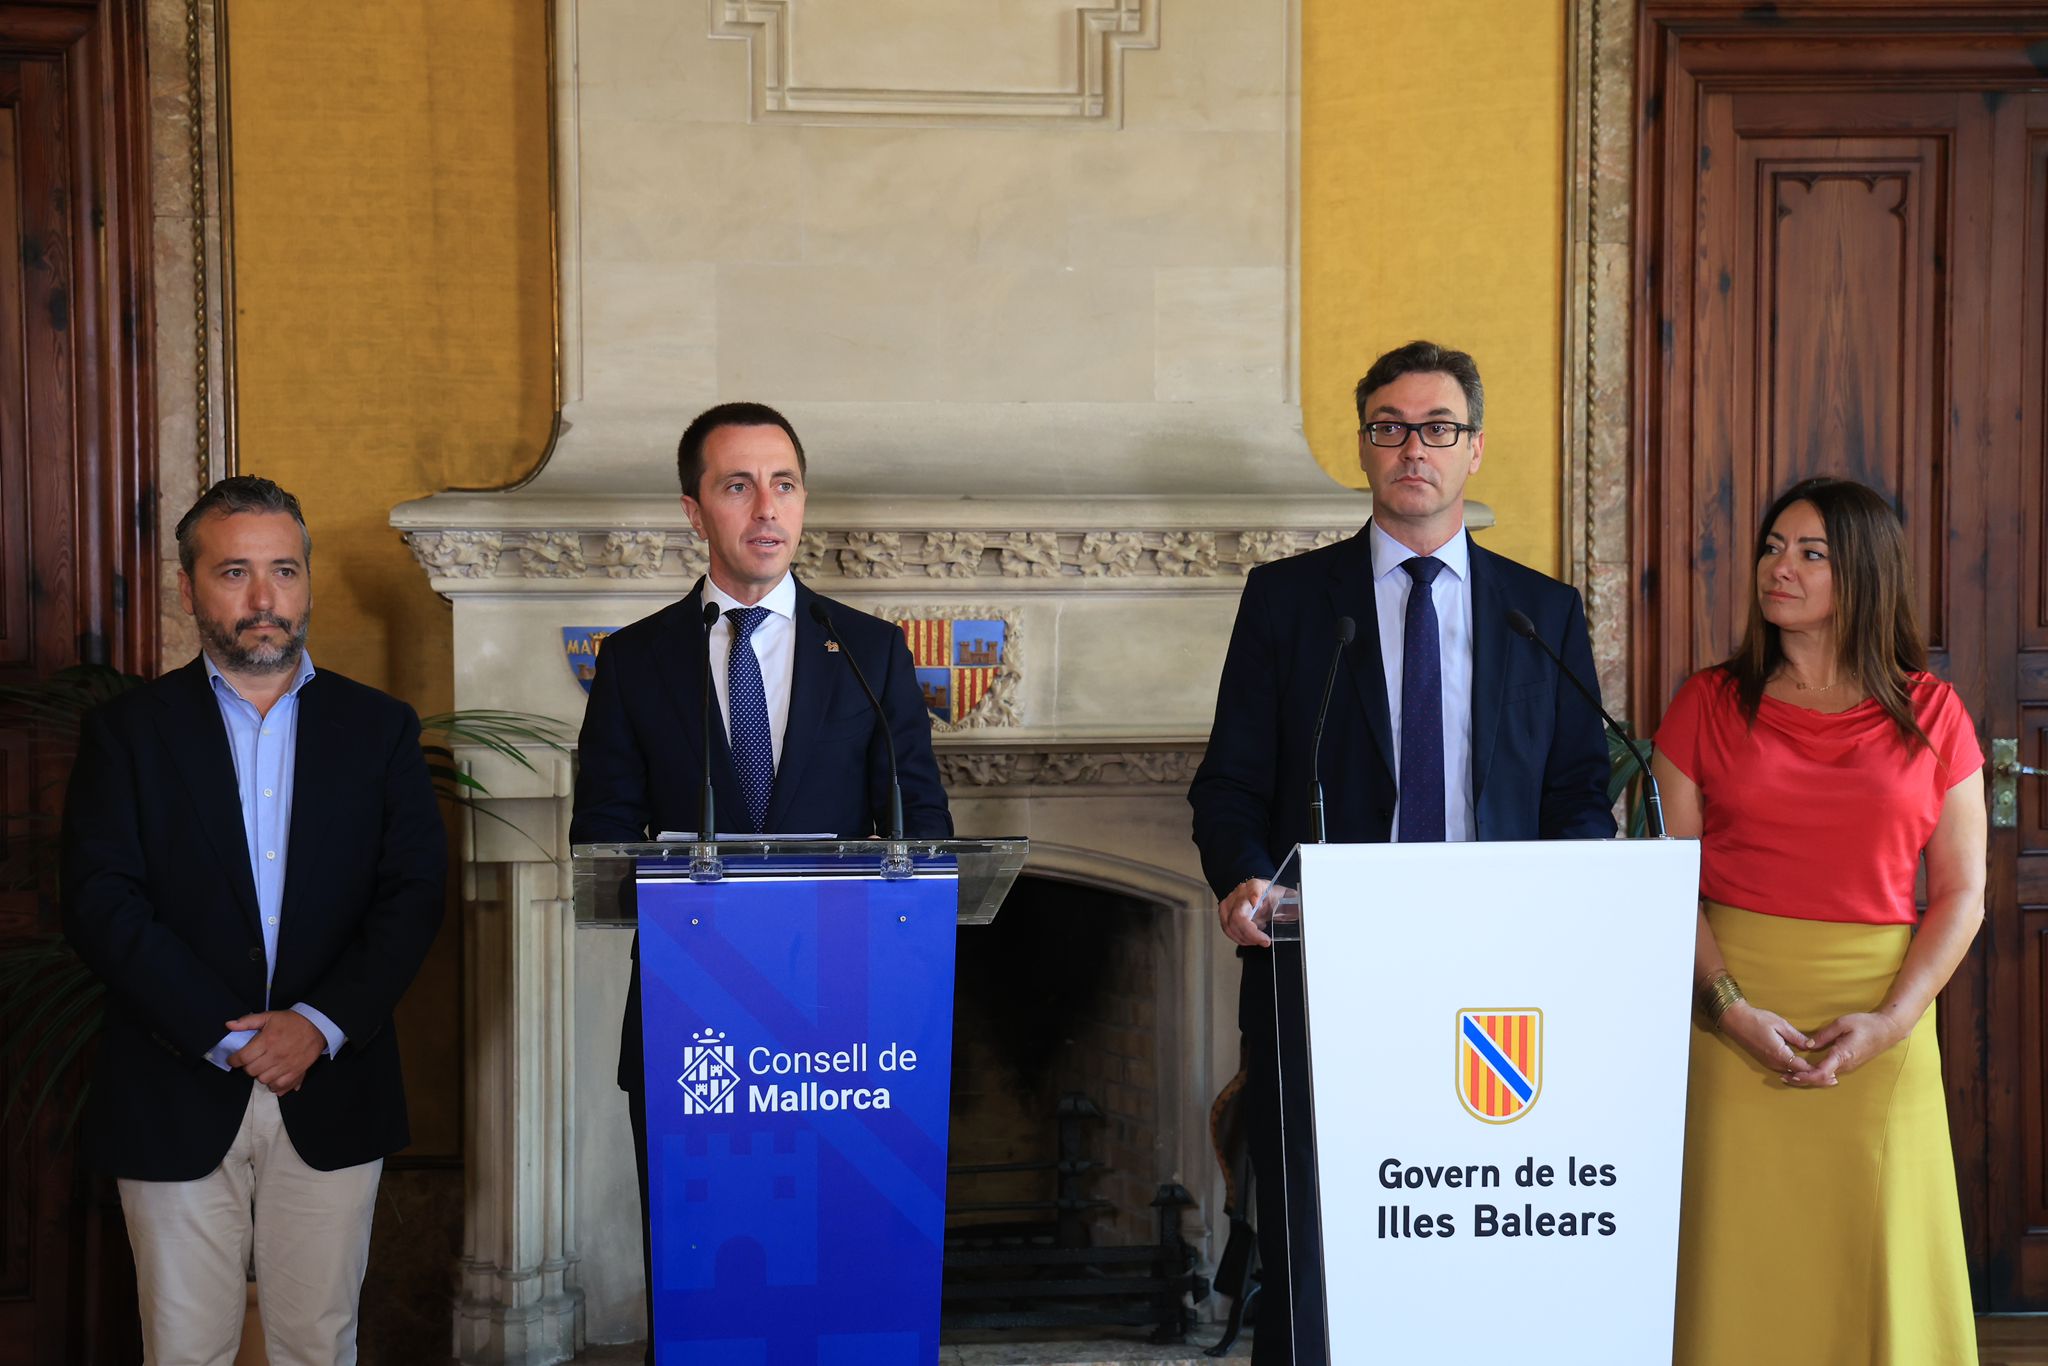 Reunión entre el presidente del Consell de Mallorca, Llorenç Galmés, y el vicepresidente y consejero de Hacienda del Govern de les Illes Balears, Antoni Costa.